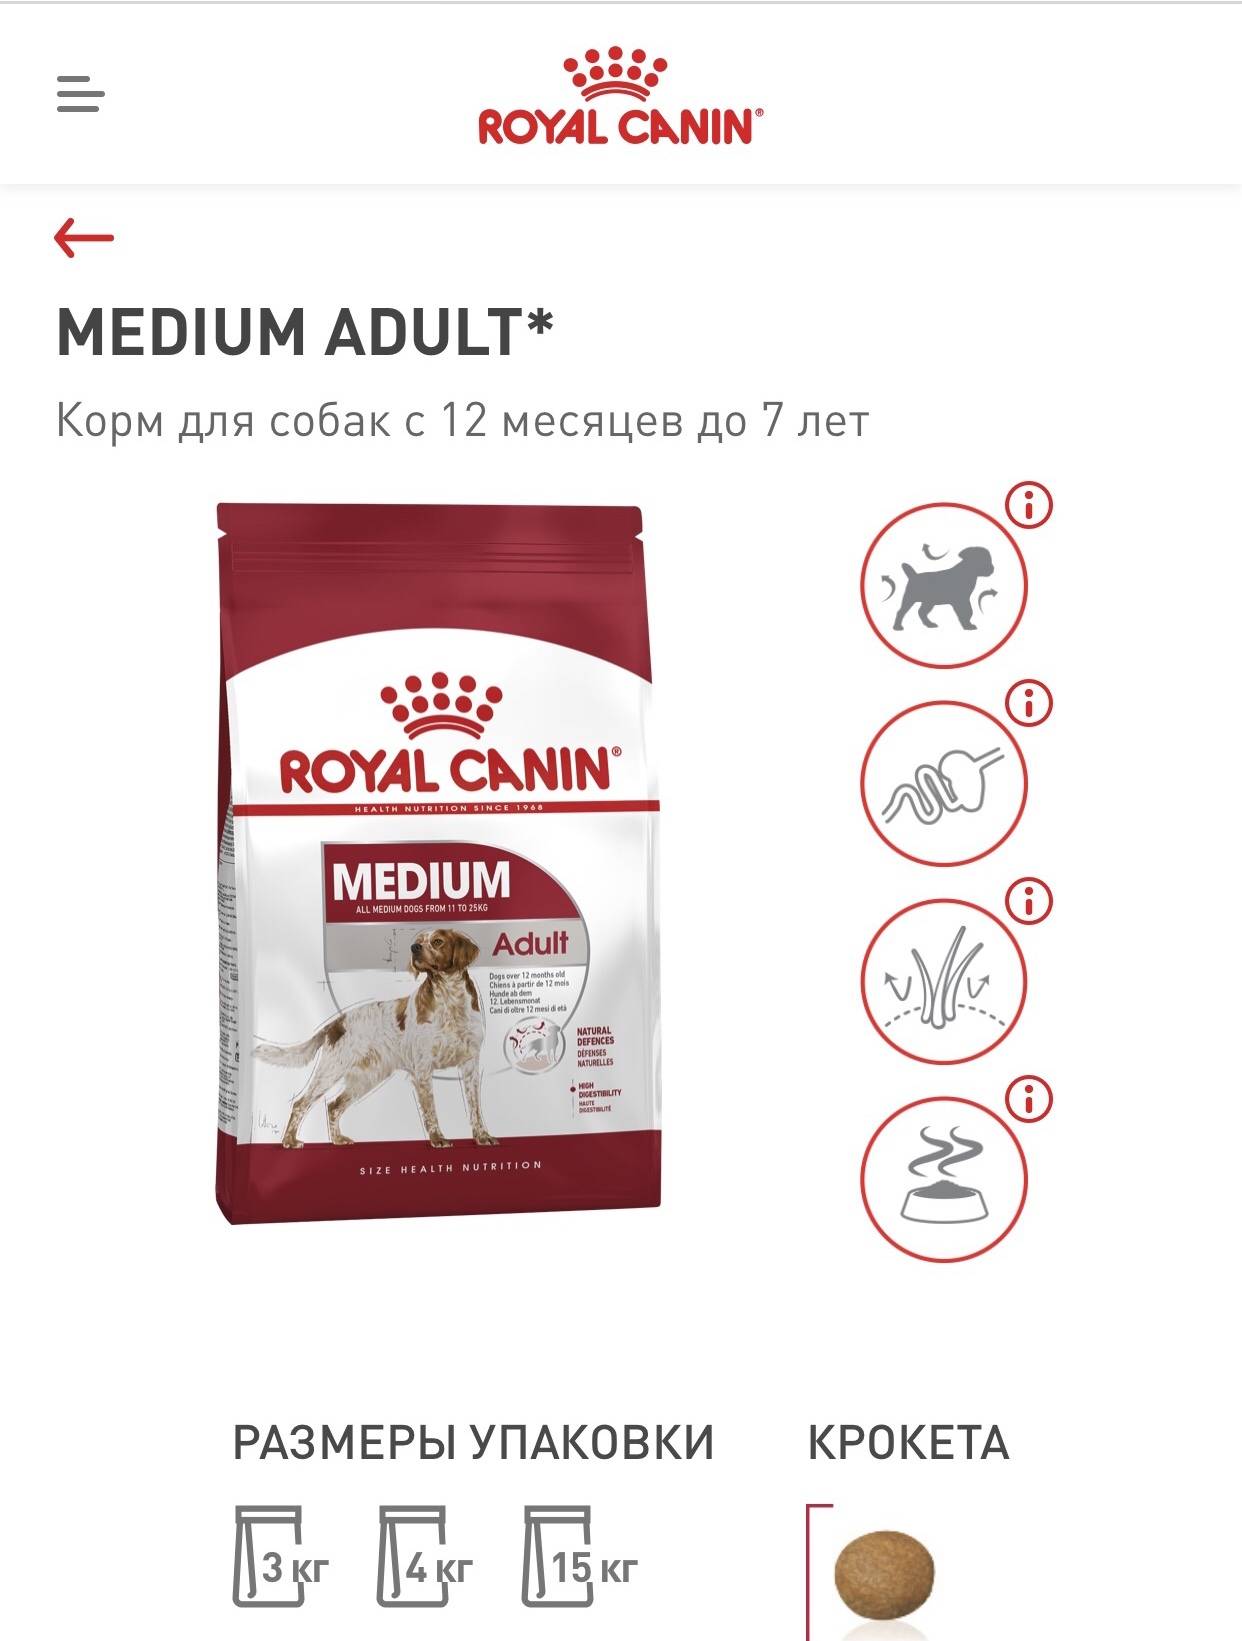 Какой производитель кормов лучше hill’s или royal canin